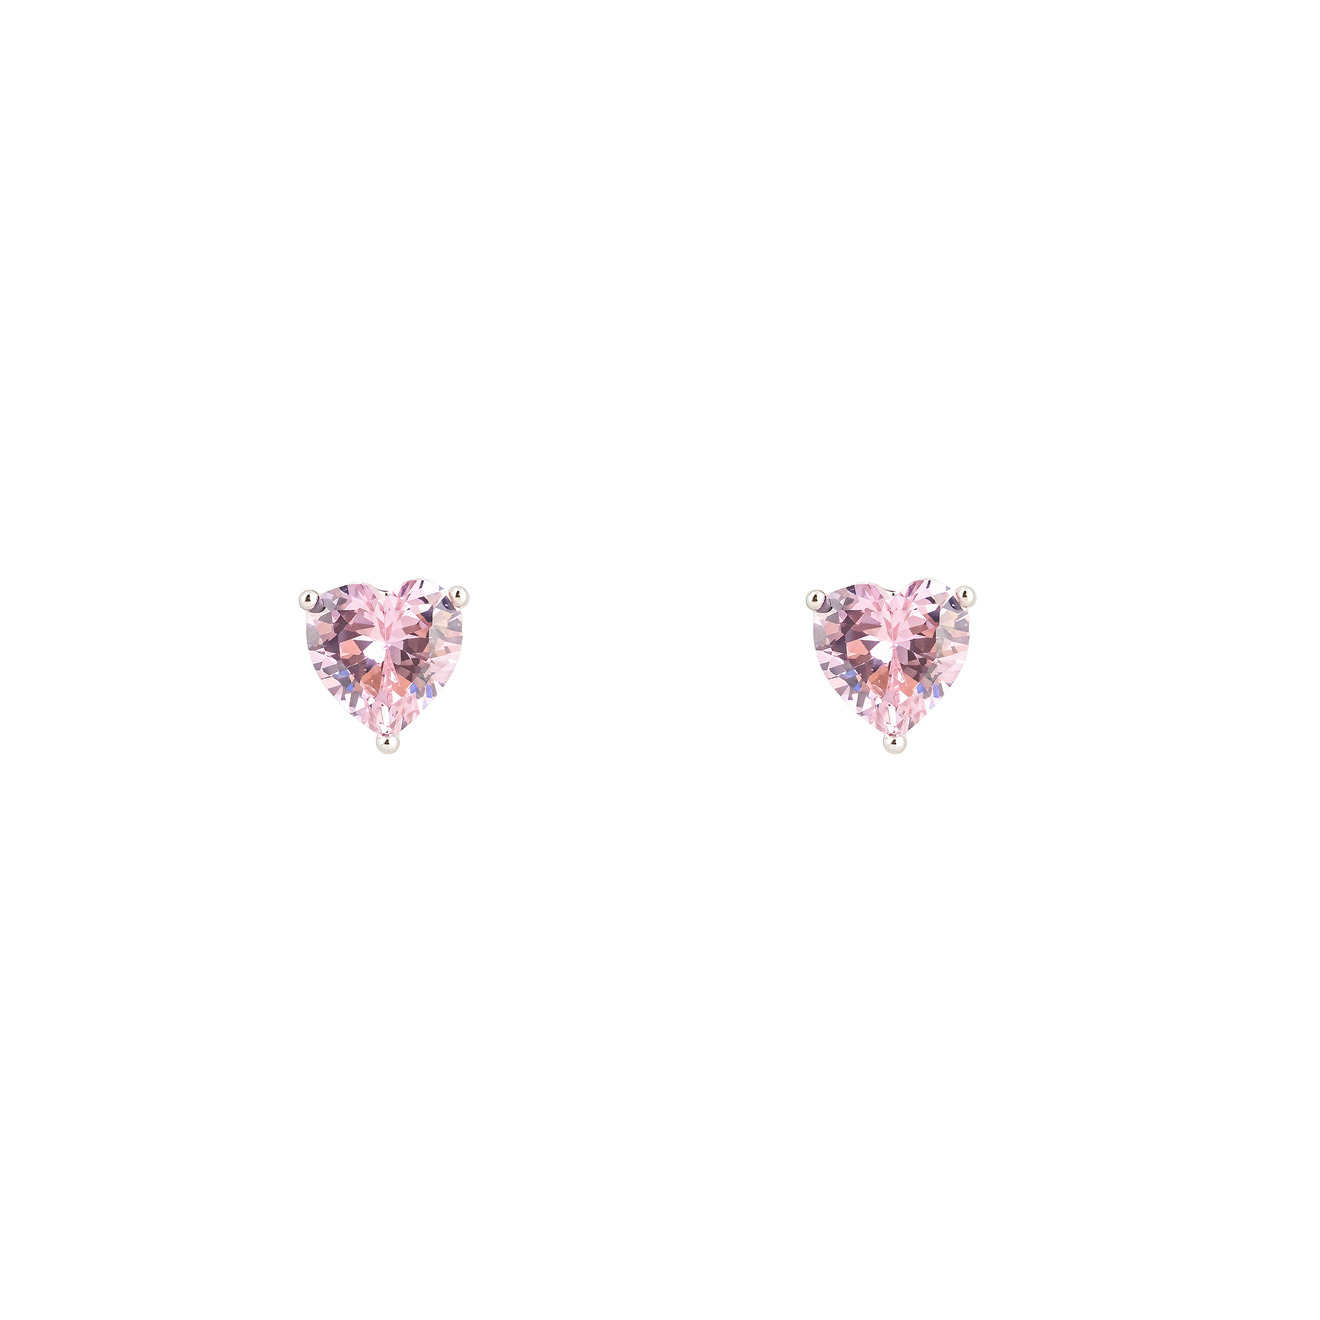 herald percy серебристые серьги в форме цветков с россыпью кристаллов Herald Percy Серебристые серьги в форме розового сердца